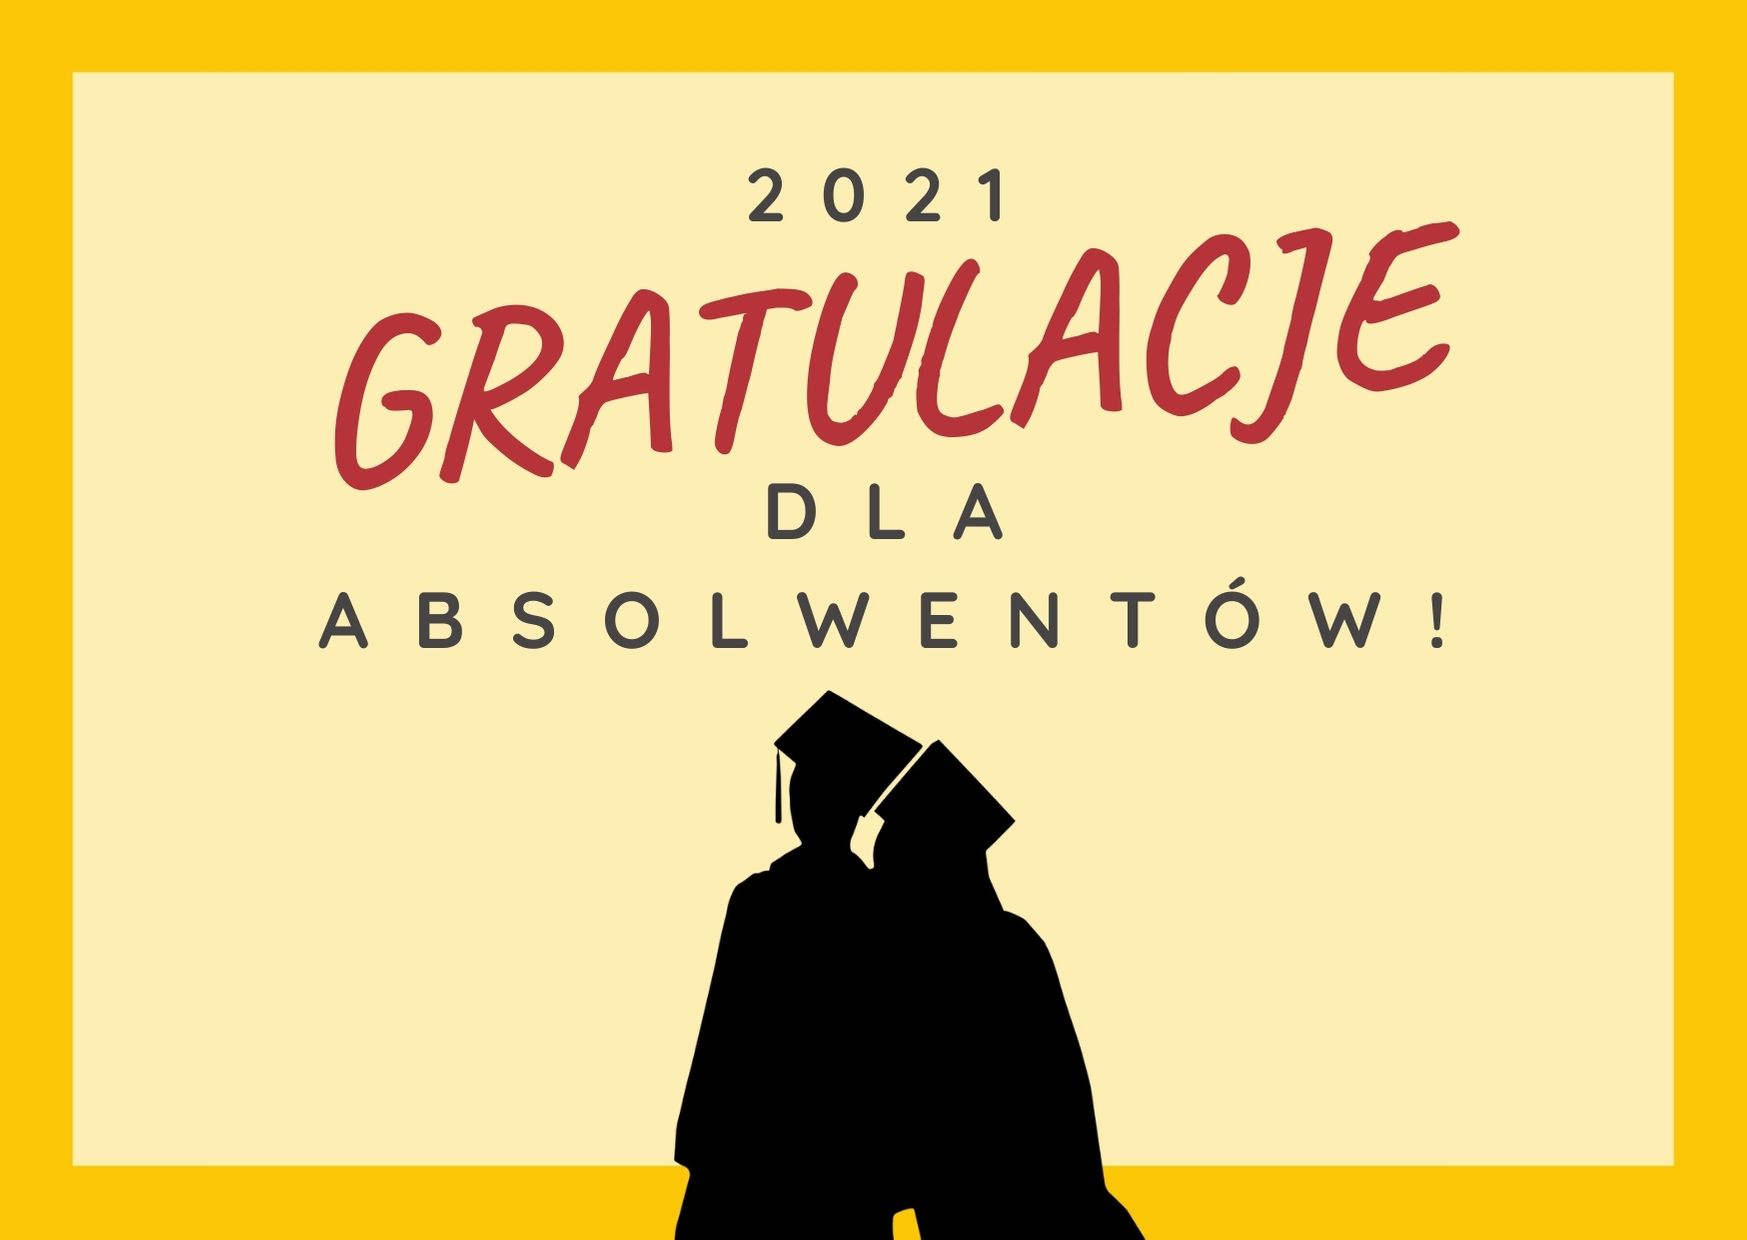 Gratulacje dla Absolwentów!